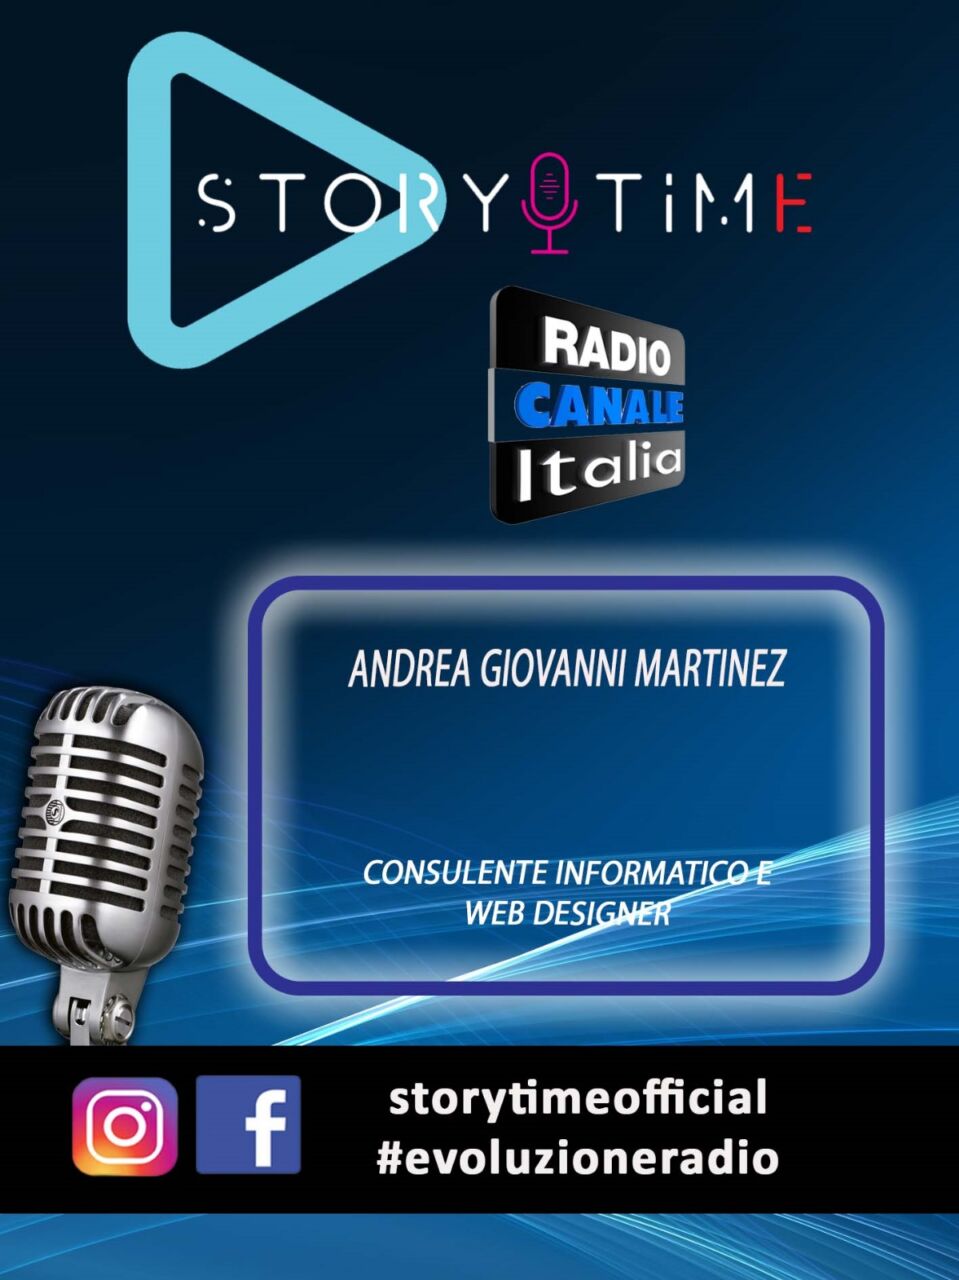 La mia intervista a Story Time, Radio Canale Italia